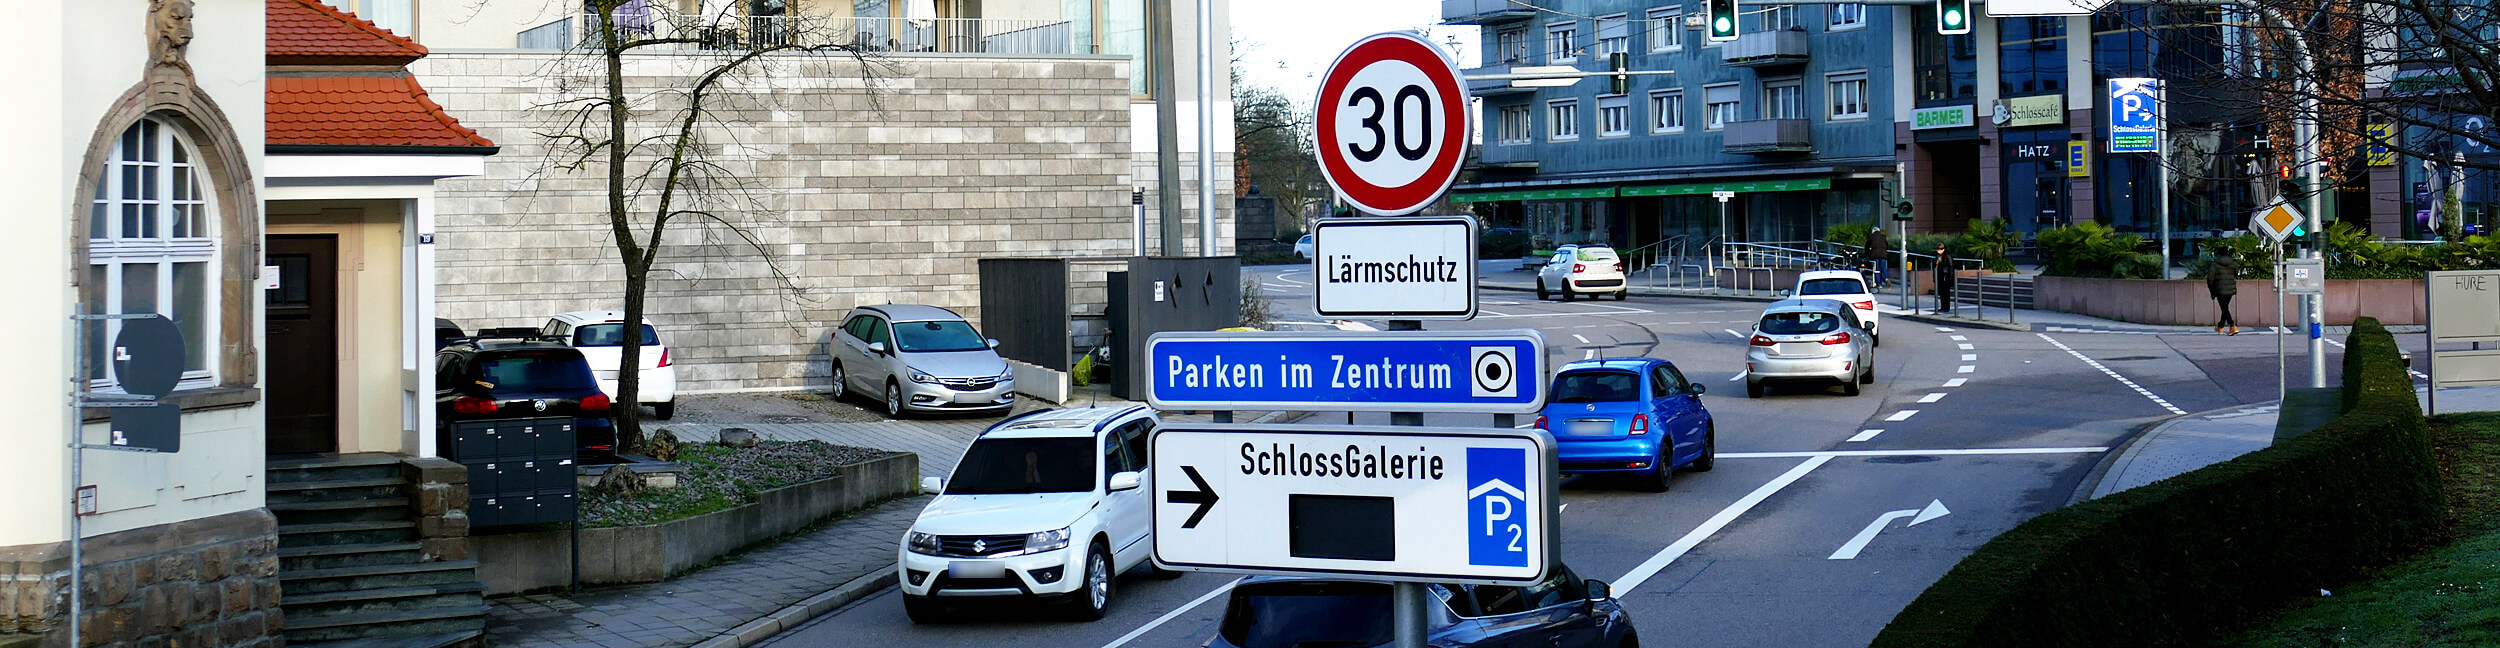 Straße mit Autos, Tempolimit Schild 3 und Lärmschutz-Schild